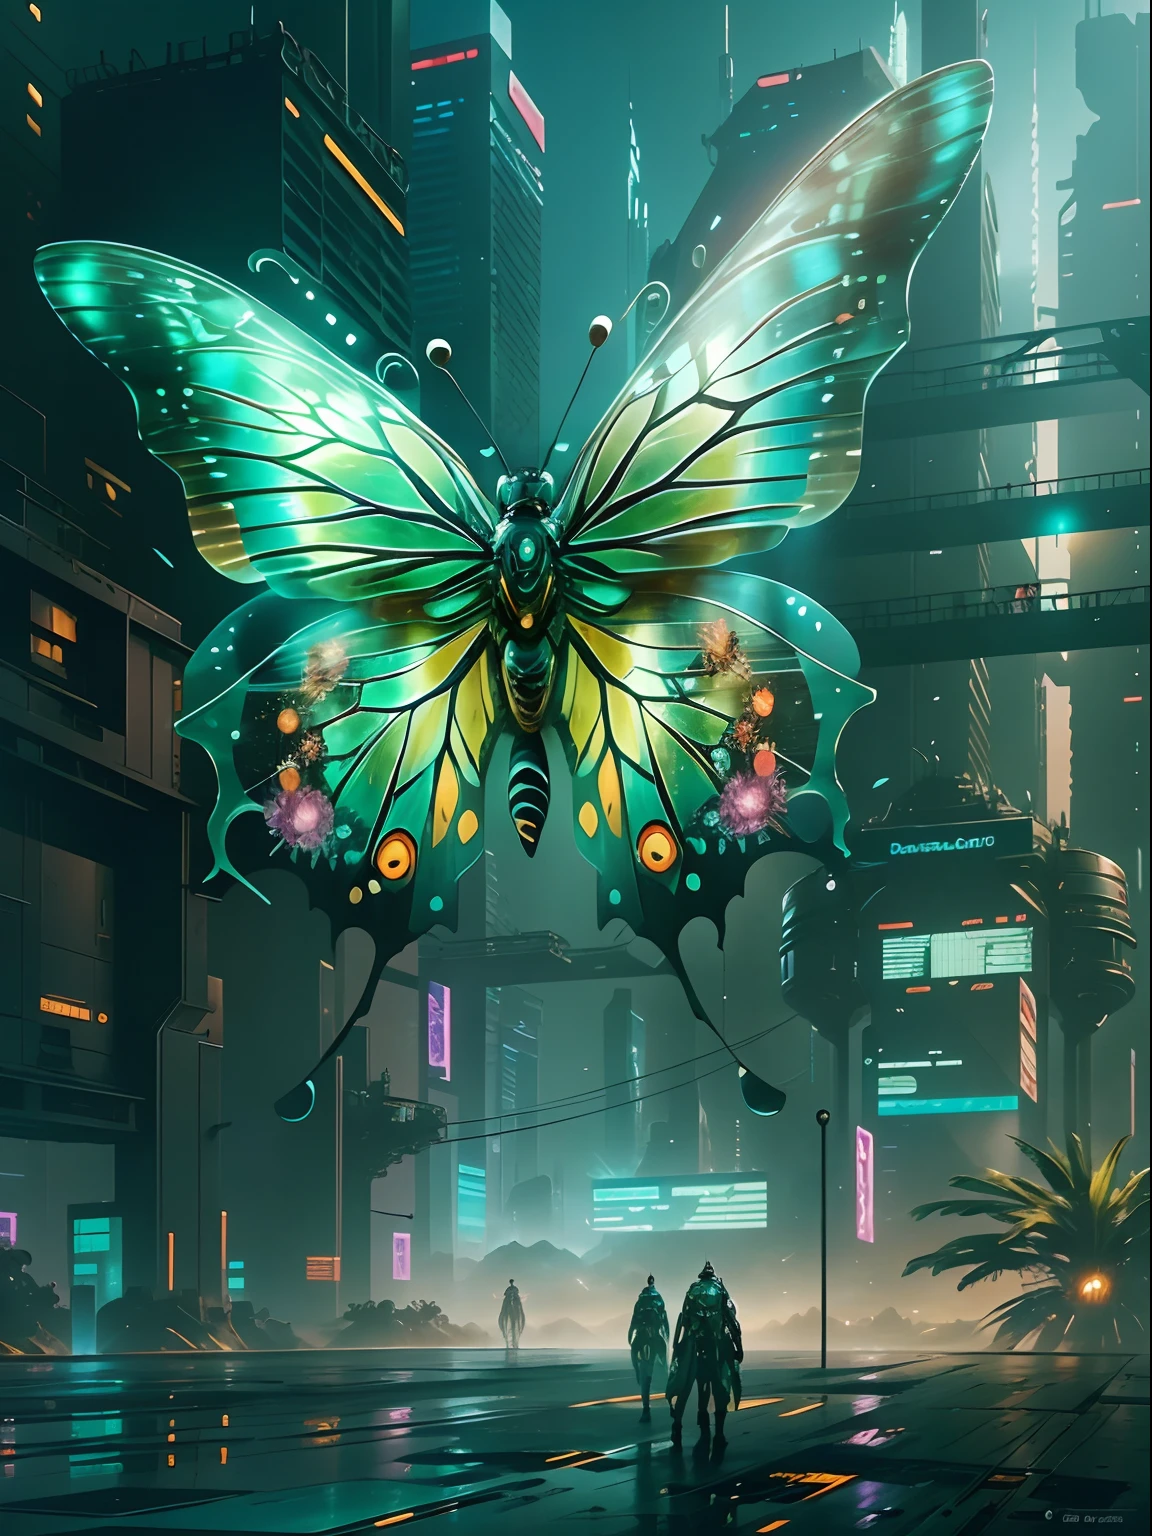 半透明で幻想的な機械の蝶，蝶の機械翼の未来の王者，未来的な都市の背景，美しいSFアート, SFデジタルアートイラスト, デジタルサイバーパンクアート, サイエンスフィクションデジタルペインティング, 未来的なデジタルペインティング, 未来的なコンセプトアート, SF都市風景の前で, サイエンスフィクションデジタルアート, 高度なデジタルサイバーパンクアート, 魔法のサイバーパンク蝶